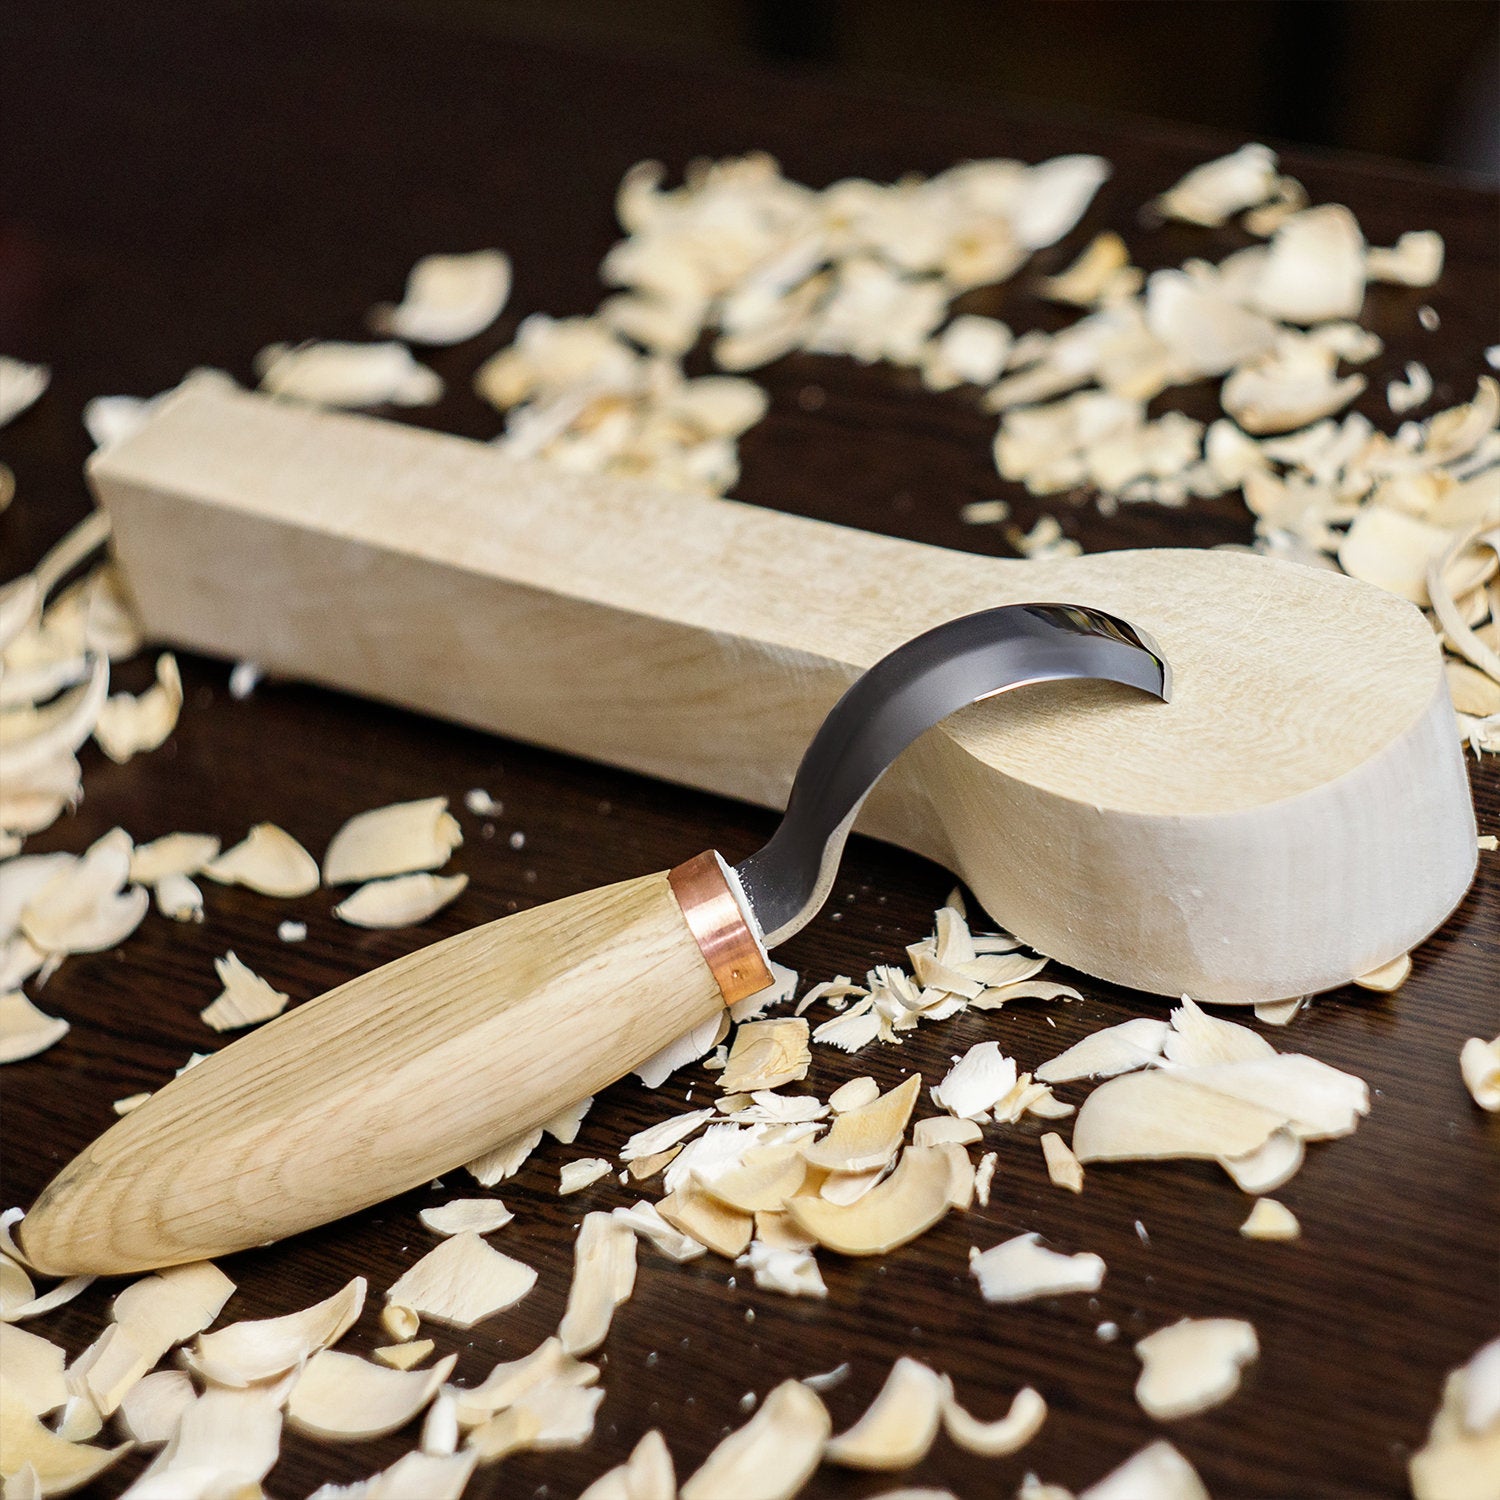 Carving Hook Knife. Forged Kuksa Carving Knife. Knives Carving Bowl Kuksa.  Kuksa Carving Tools. Hand Forged Wood Carving Tool. Forged Knife -   Finland